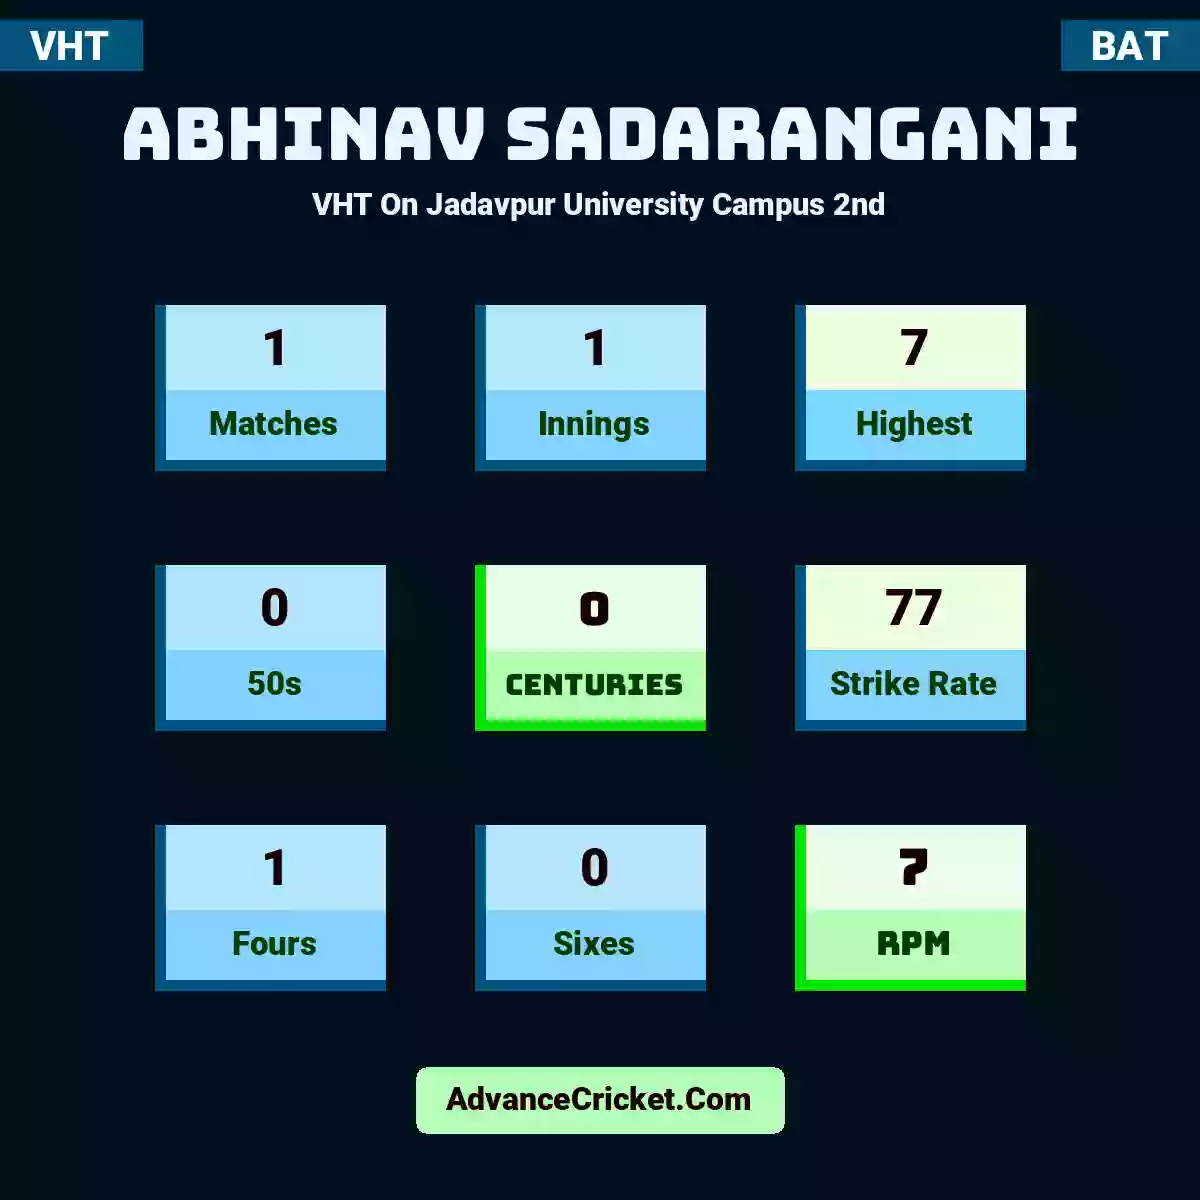 Abhinav Sadarangani VHT  On Jadavpur University Campus 2nd, Abhinav Sadarangani played 1 matches, scored 7 runs as highest, 0 half-centuries, and 0 centuries, with a strike rate of 77. A.Sadarangani hit 1 fours and 0 sixes, with an RPM of 7.